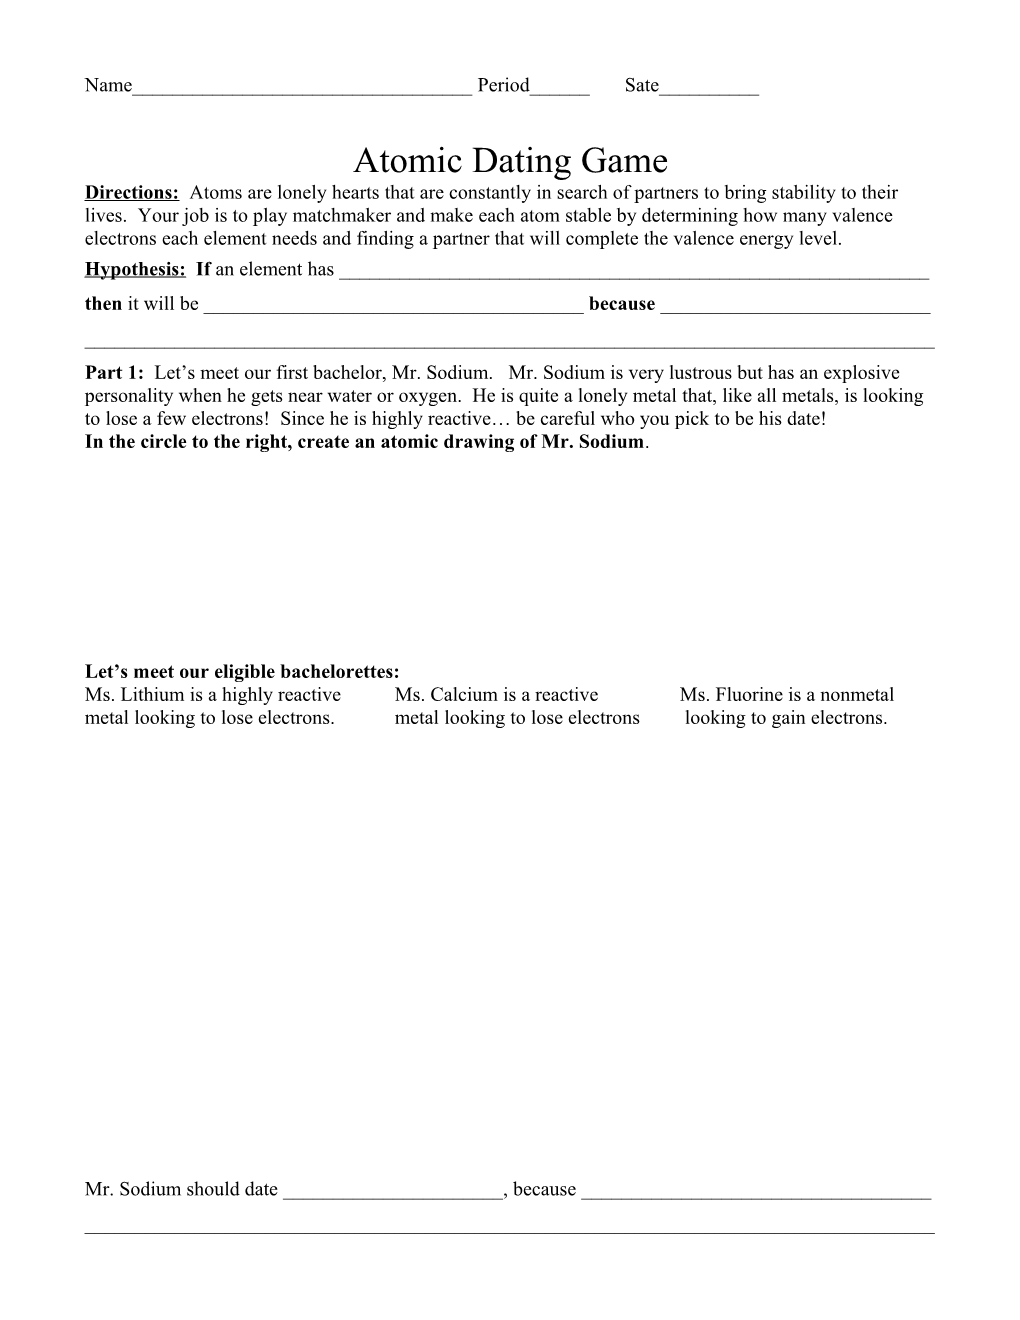 Atomic Dating Game s1